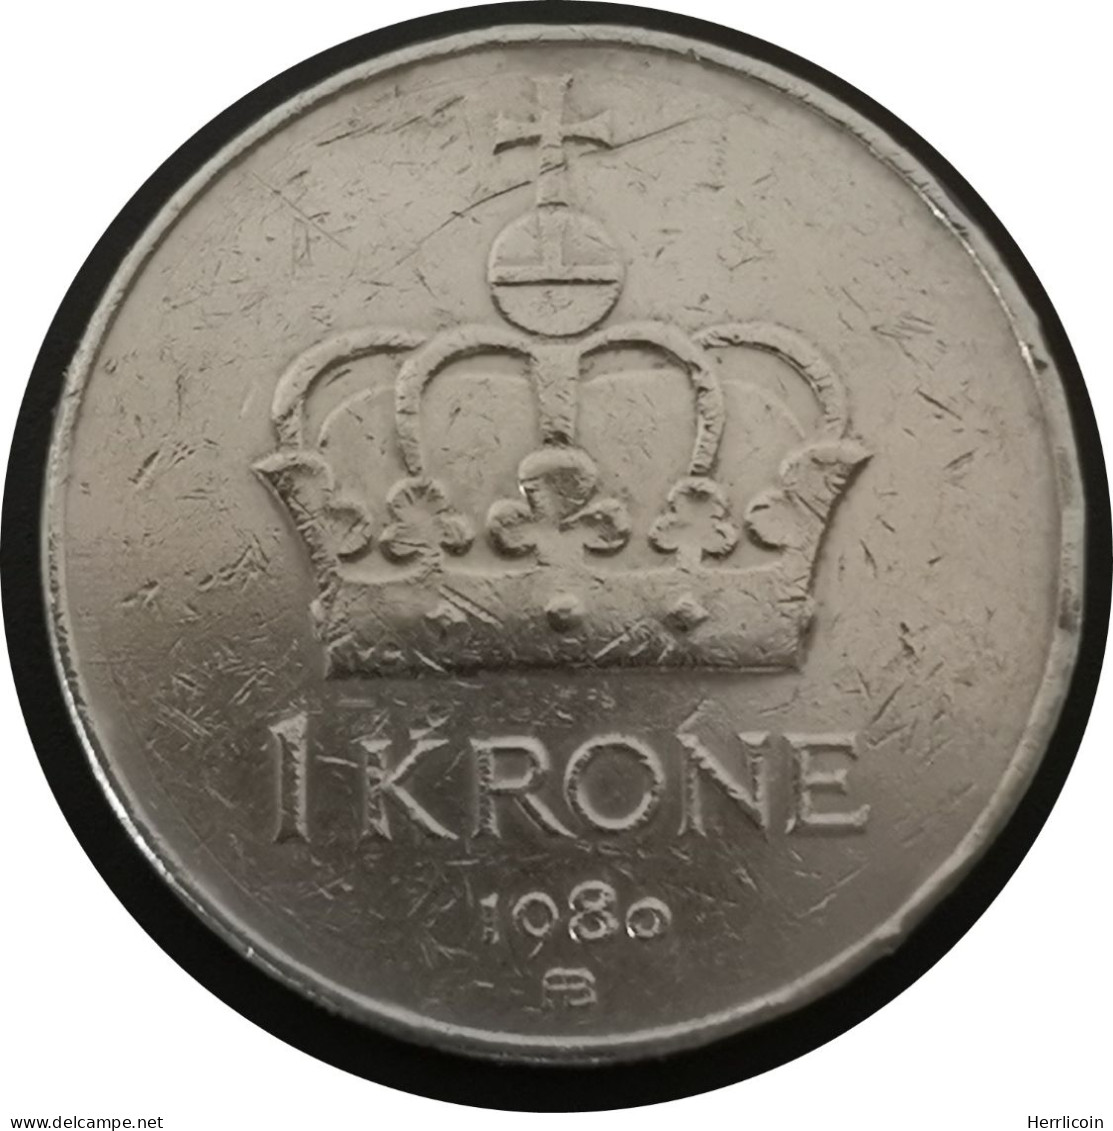 Monnaie Norvège - 1980 - 1 Krone - Olav V - Noruega